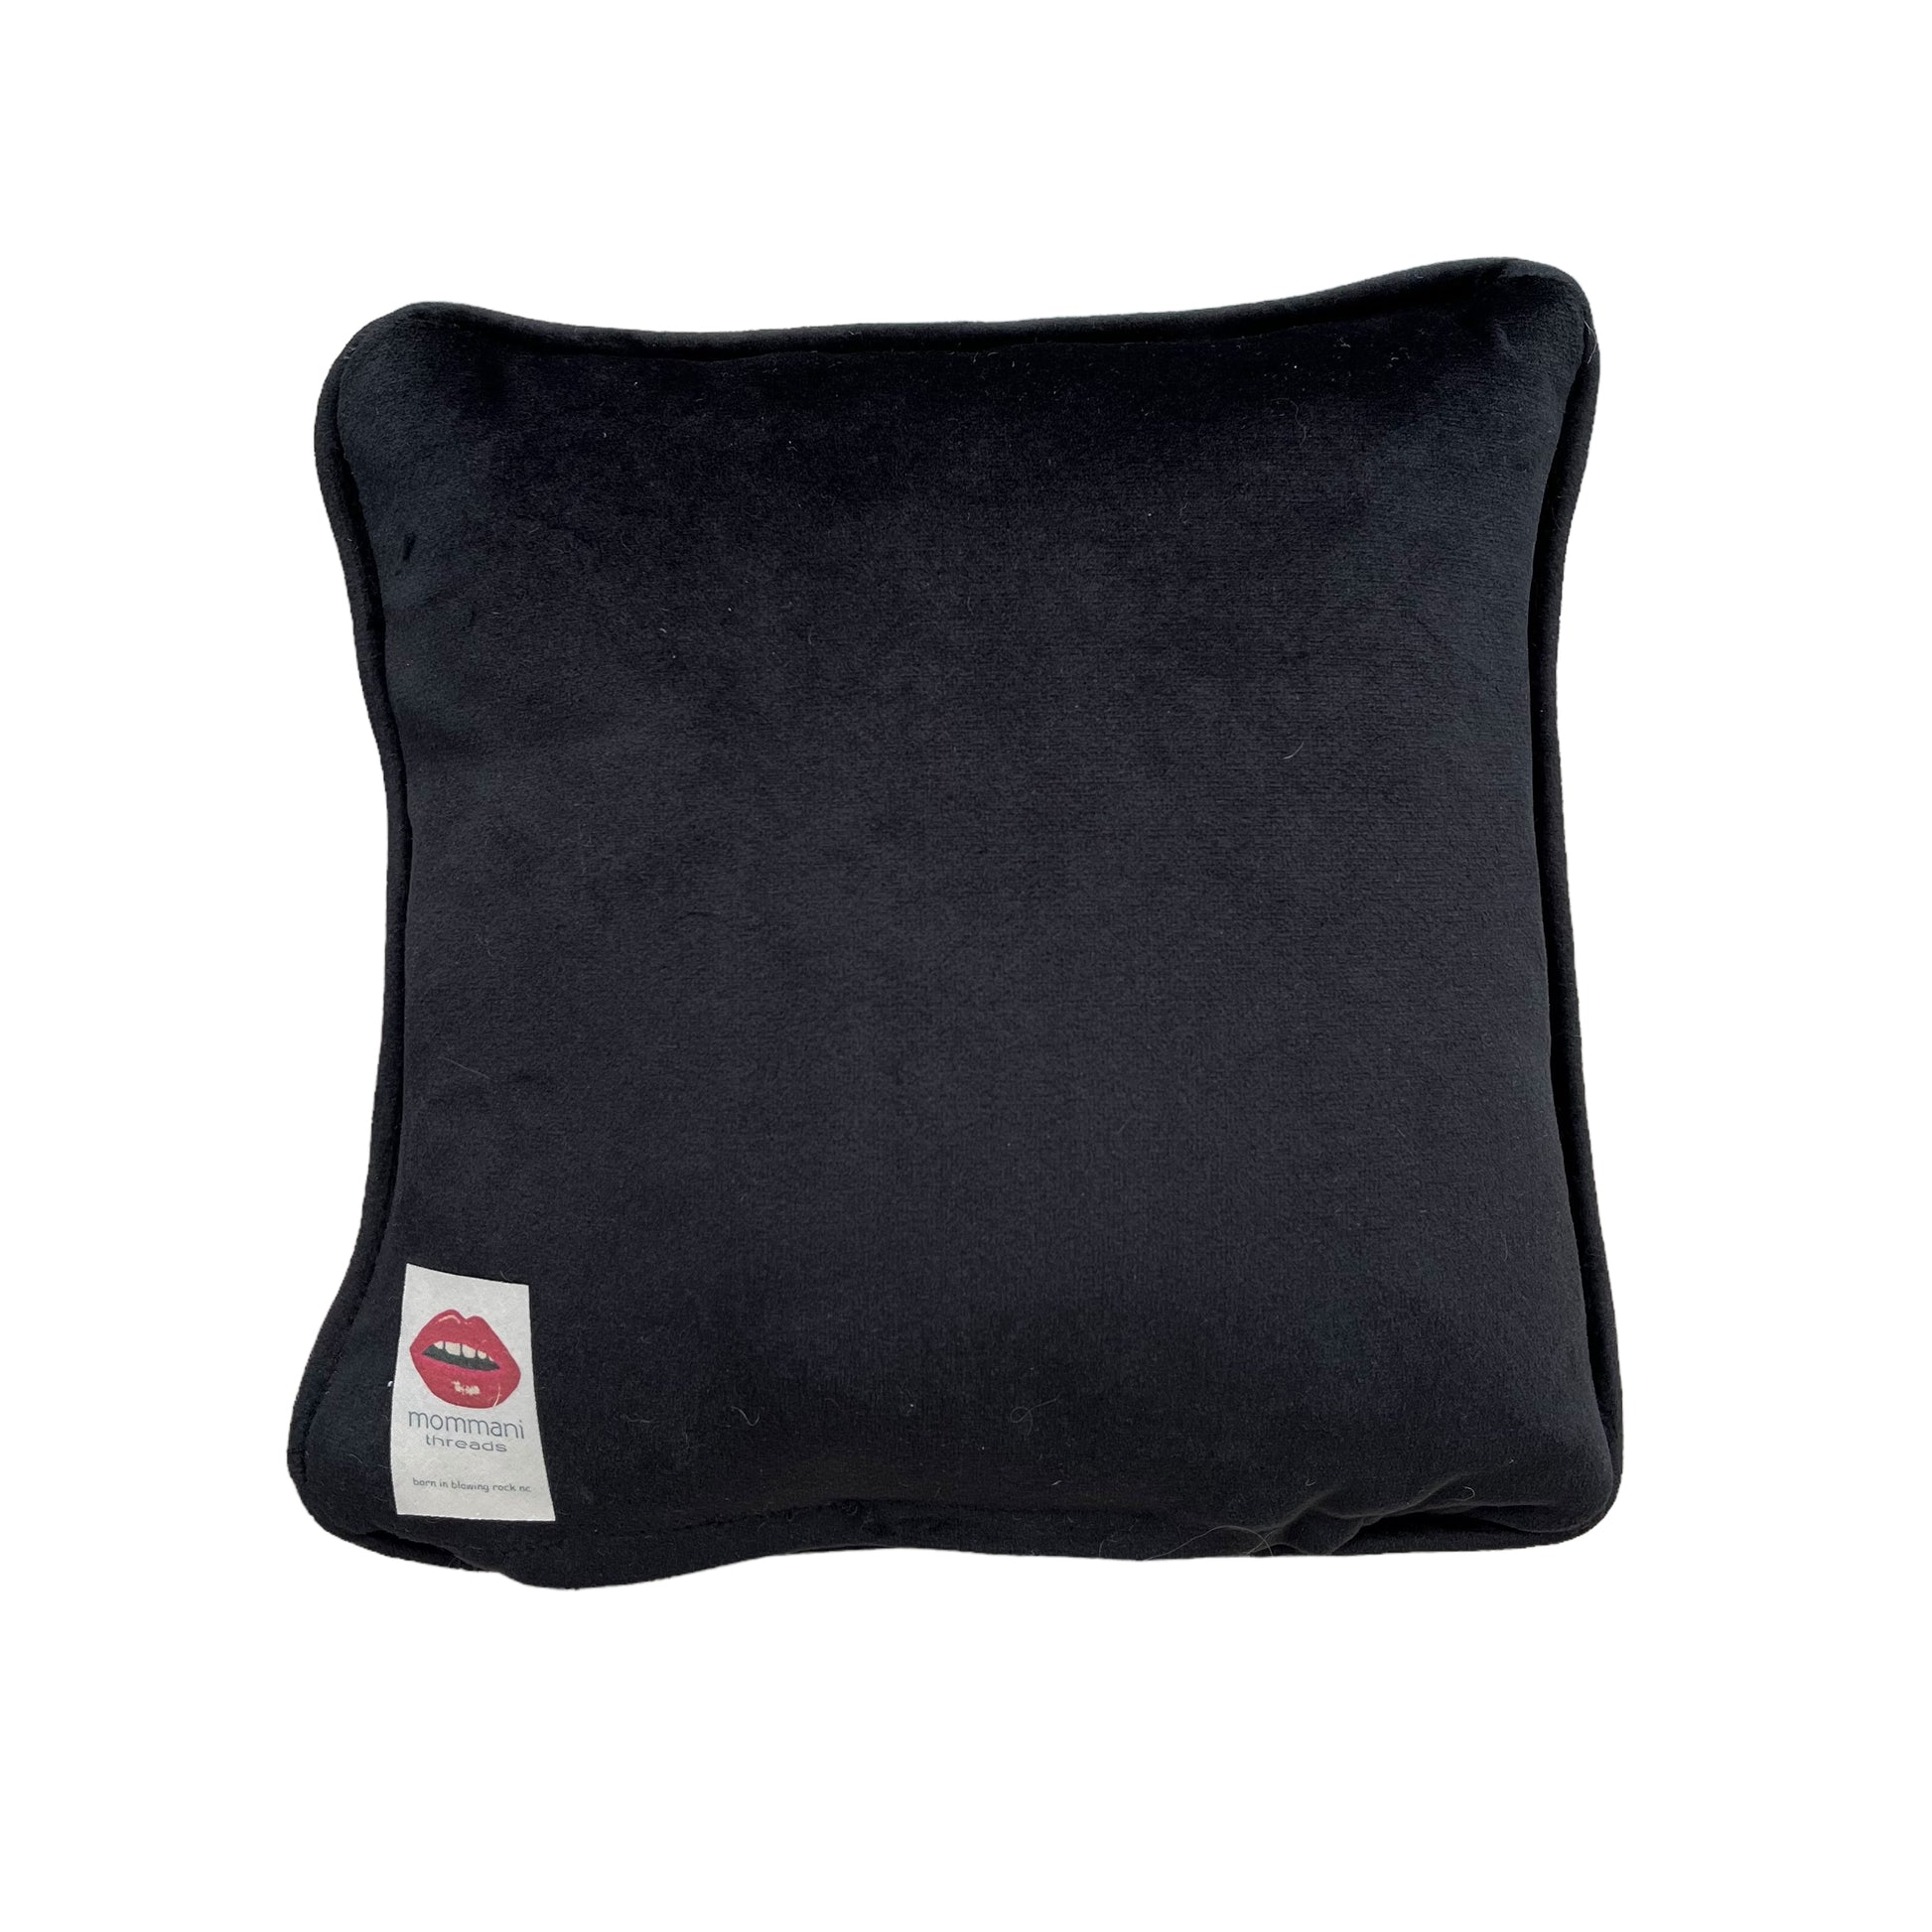 black velvet square pillow by Mommani Threads